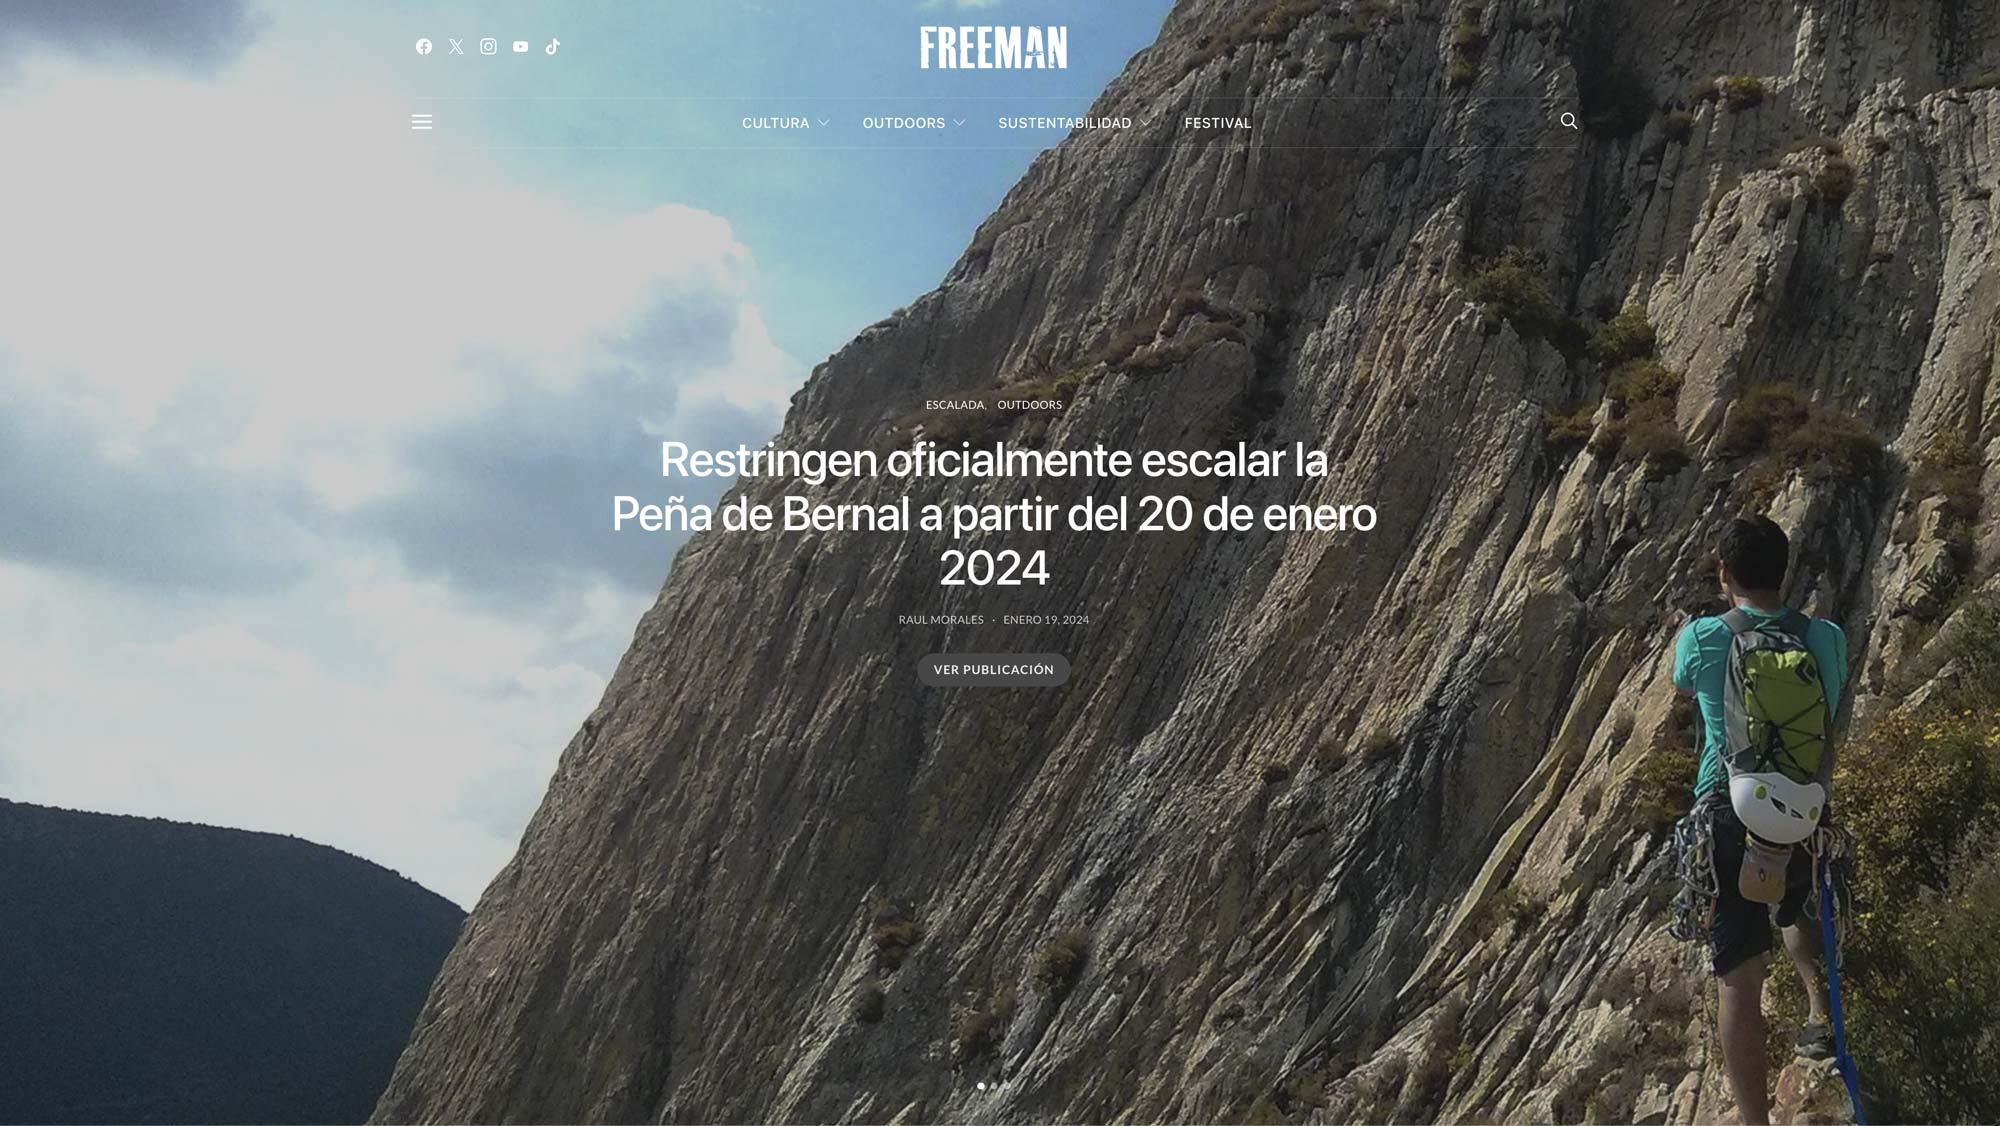 Restringen oficialmente escalar la Peña de Bernal a partir del 20 de enero 2024